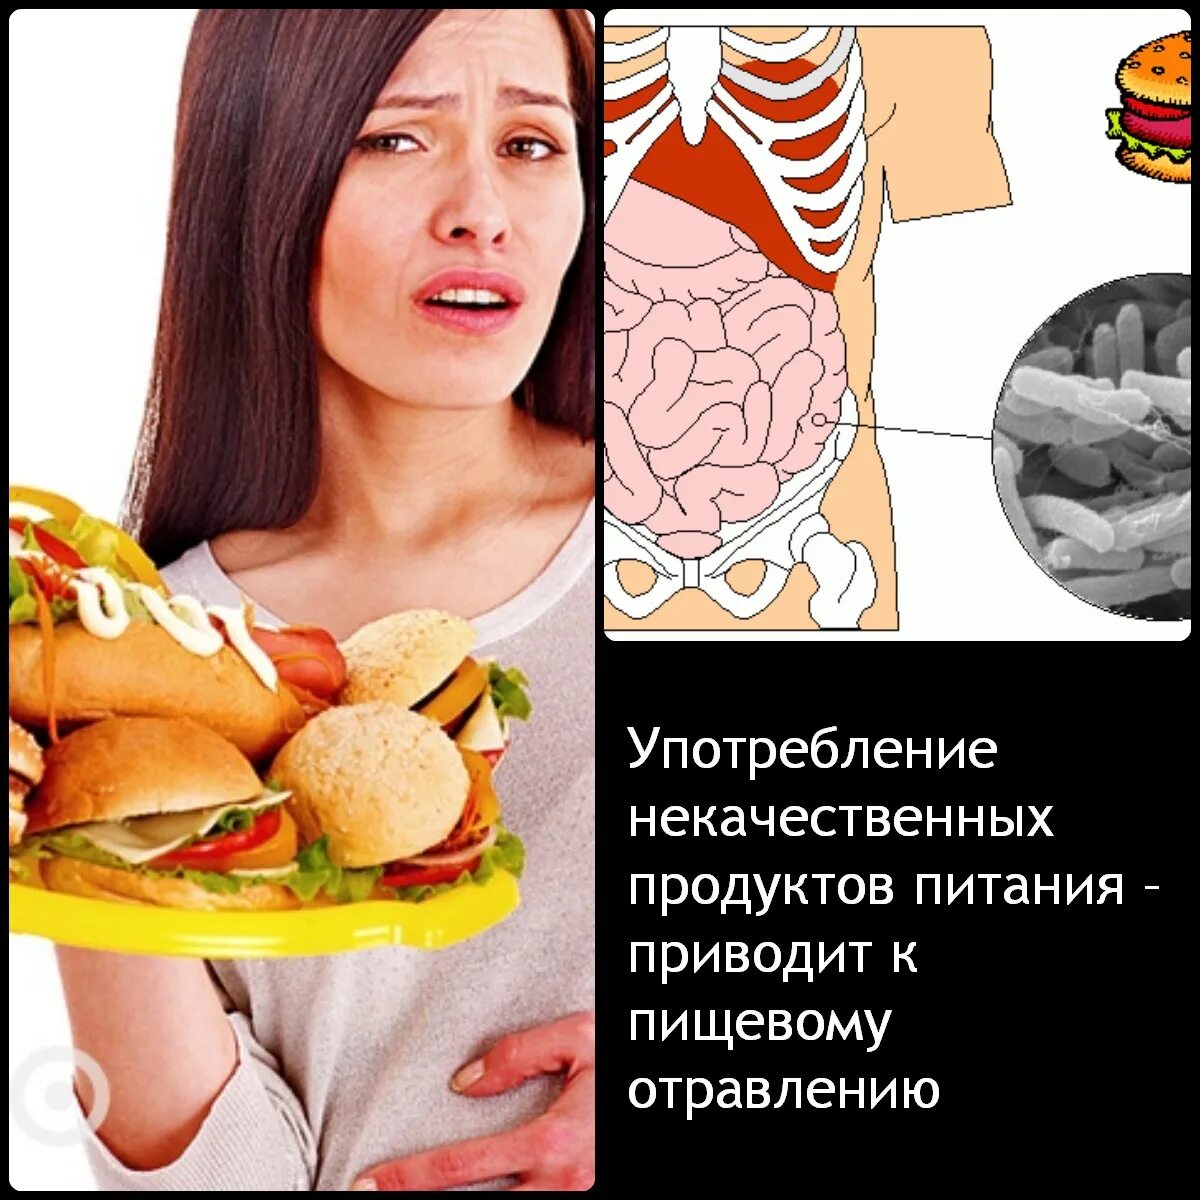 Нарушения в питании человека. Пищевое отравление. Отравление пищей. Отравление недоброкачественной пищей. Заболевания связанные с употреблением пищи.